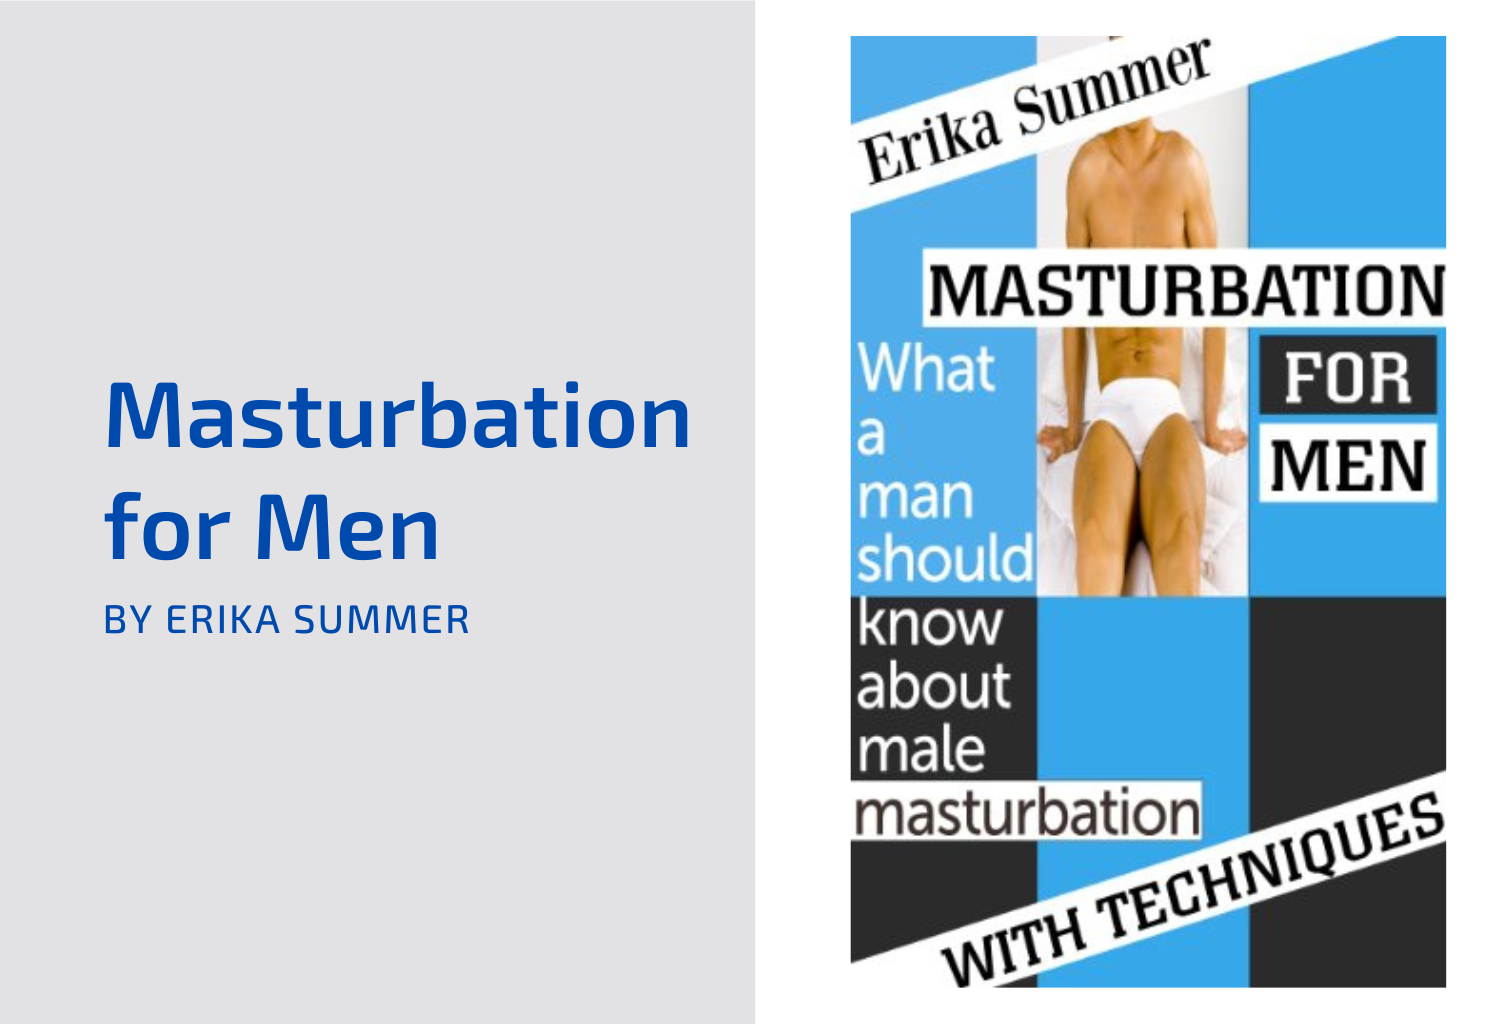 Masturbation for Men by Erika Summer